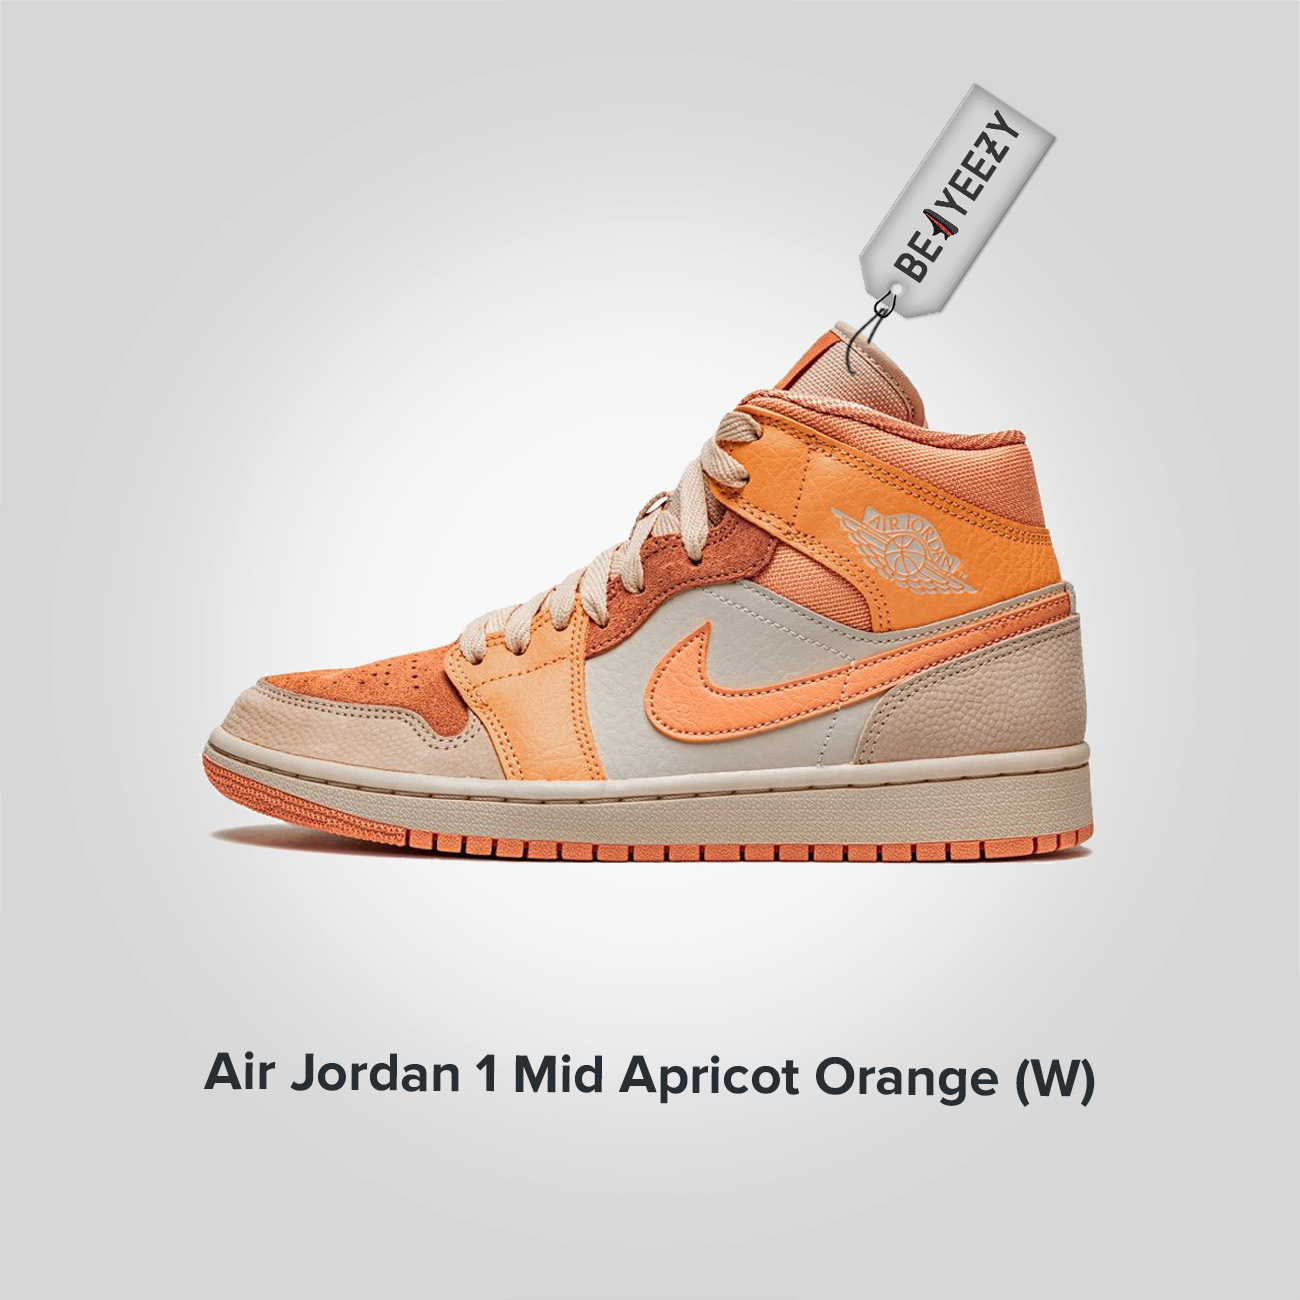 Jordan 1 Mid Apricot Orange (W)